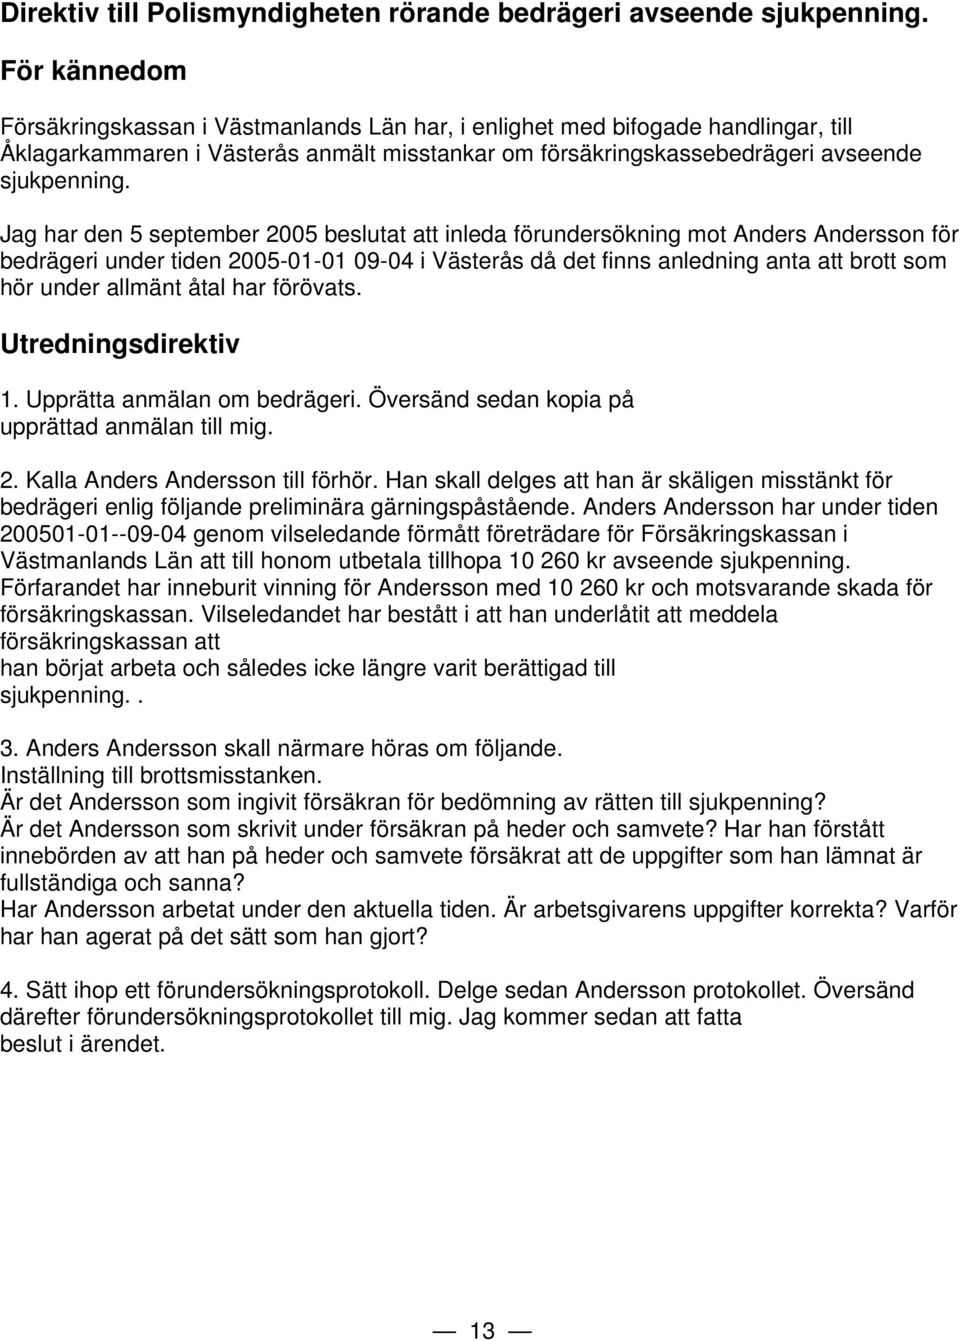 Jag har den 5 september 2005 beslutat att inleda förundersökning mot Anders Andersson för bedrägeri under tiden 2005-01-01 09-04 i Västerås då det finns anledning anta att brott som hör under allmänt